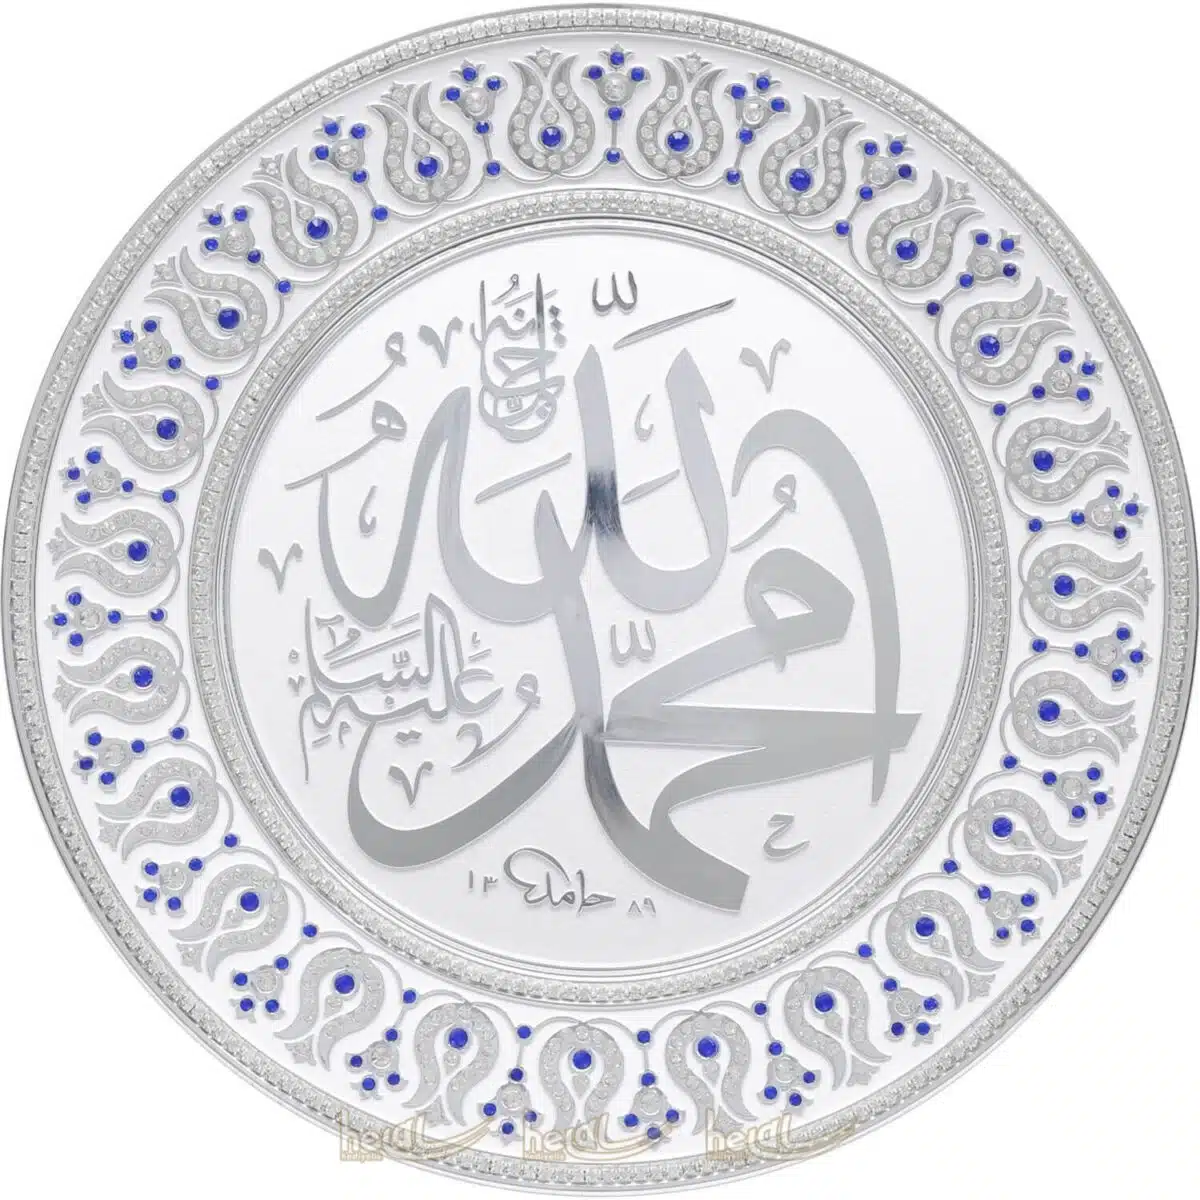 33cm Kristal Az Taşlı Allah cc.ve Muhammed sav. Lafzı Yazılı Tabak Masa Üstü ve Duvar Süsü Ayetli Ürünler